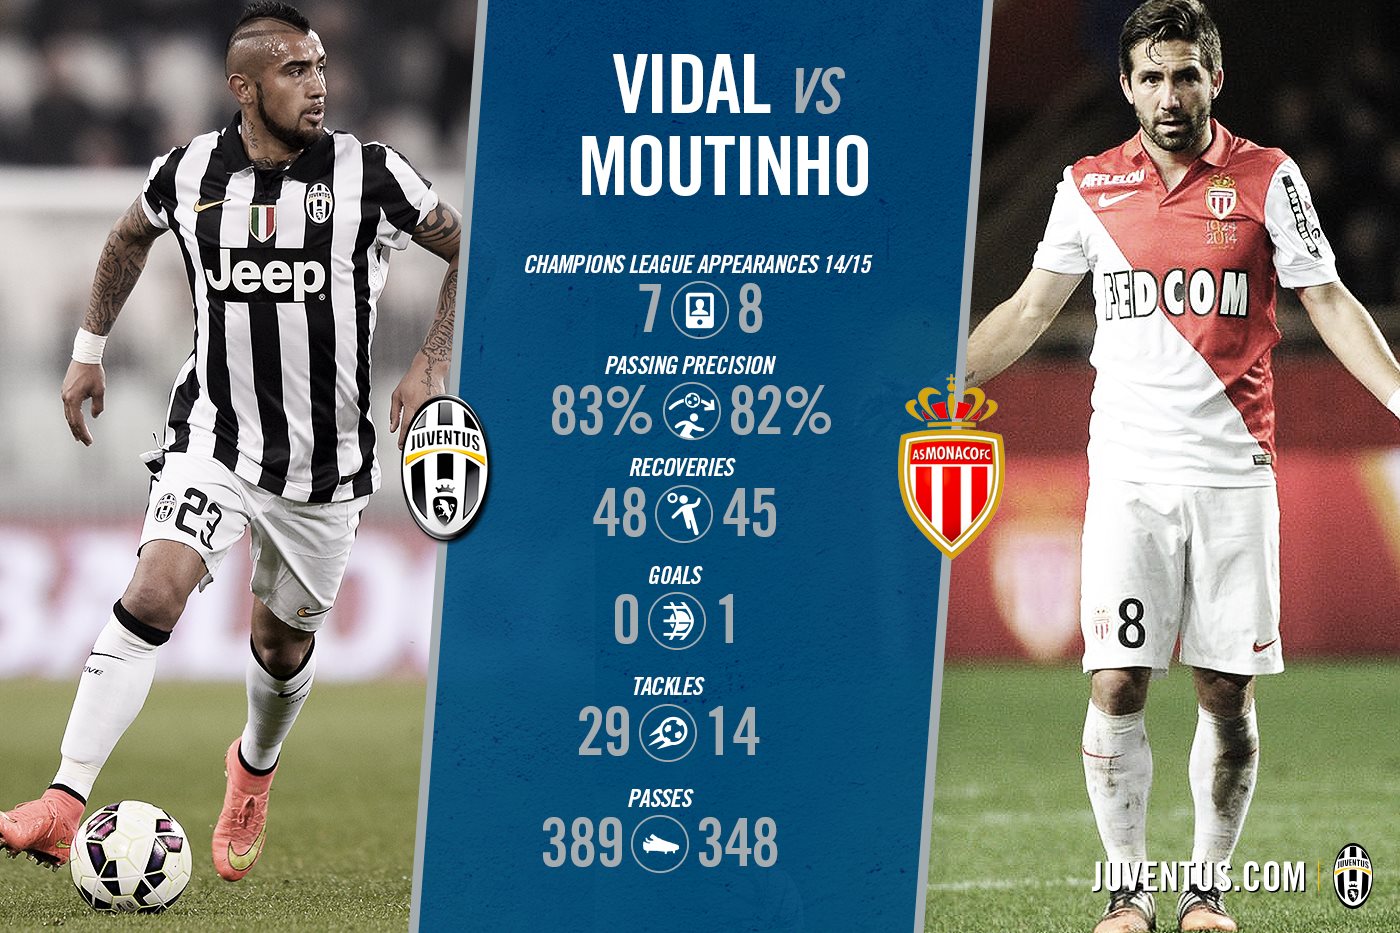 عکس روز: مقایسه آماری ویدال و موتینیو در لیگ قهرمانان